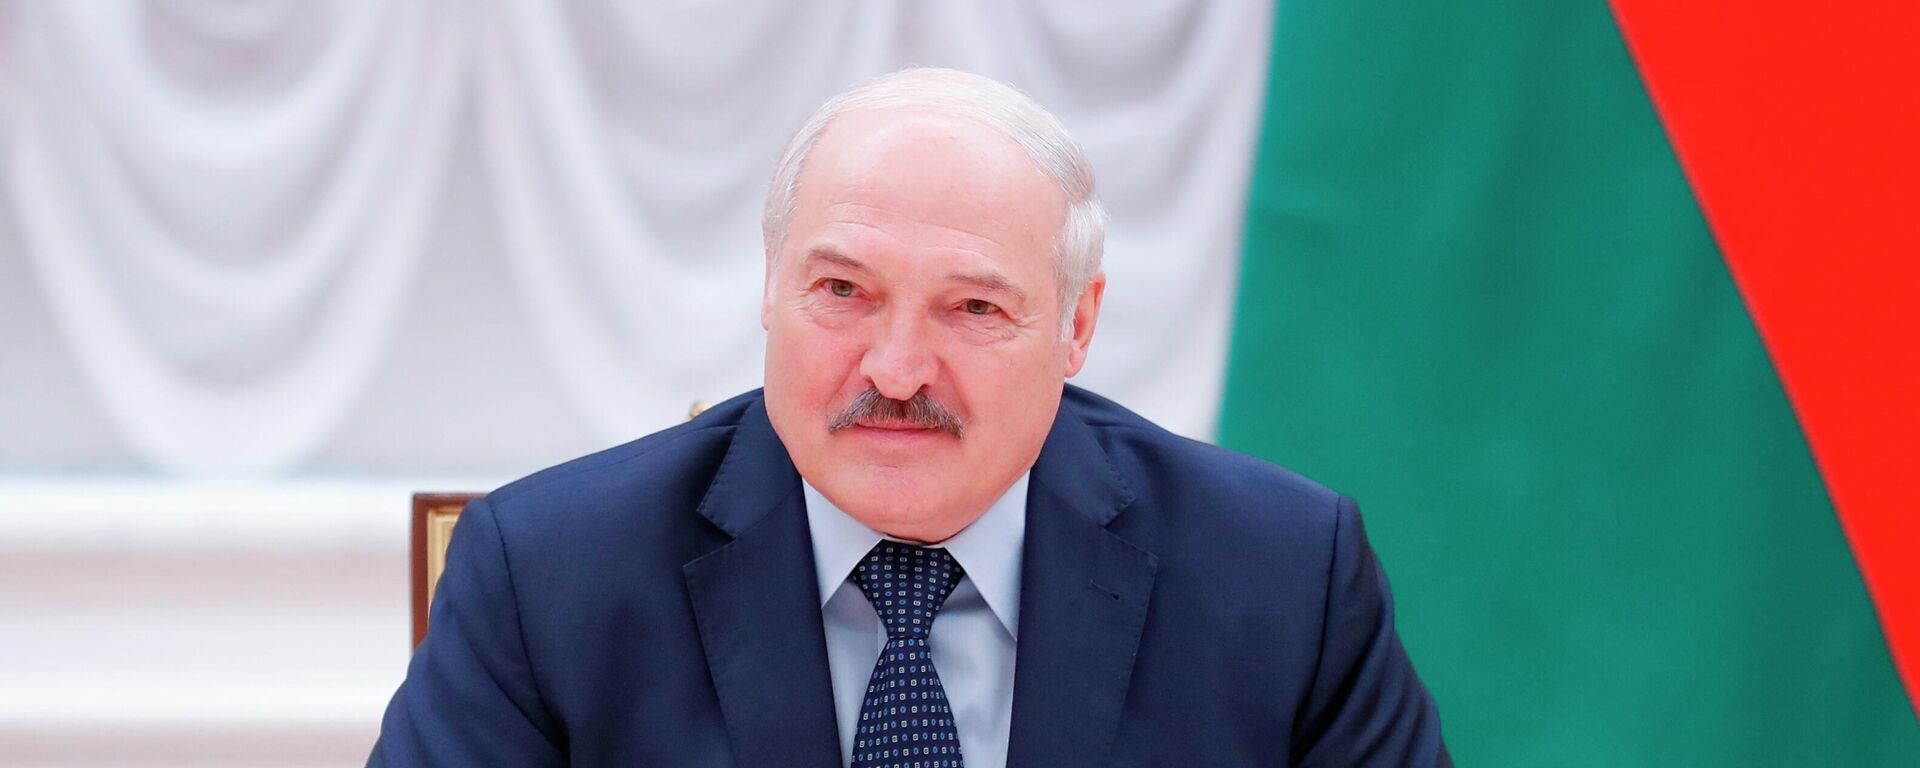 Alexandr Lukashenko, presidente de Bielorrusia - Sputnik Mundo, 1920, 01.06.2021